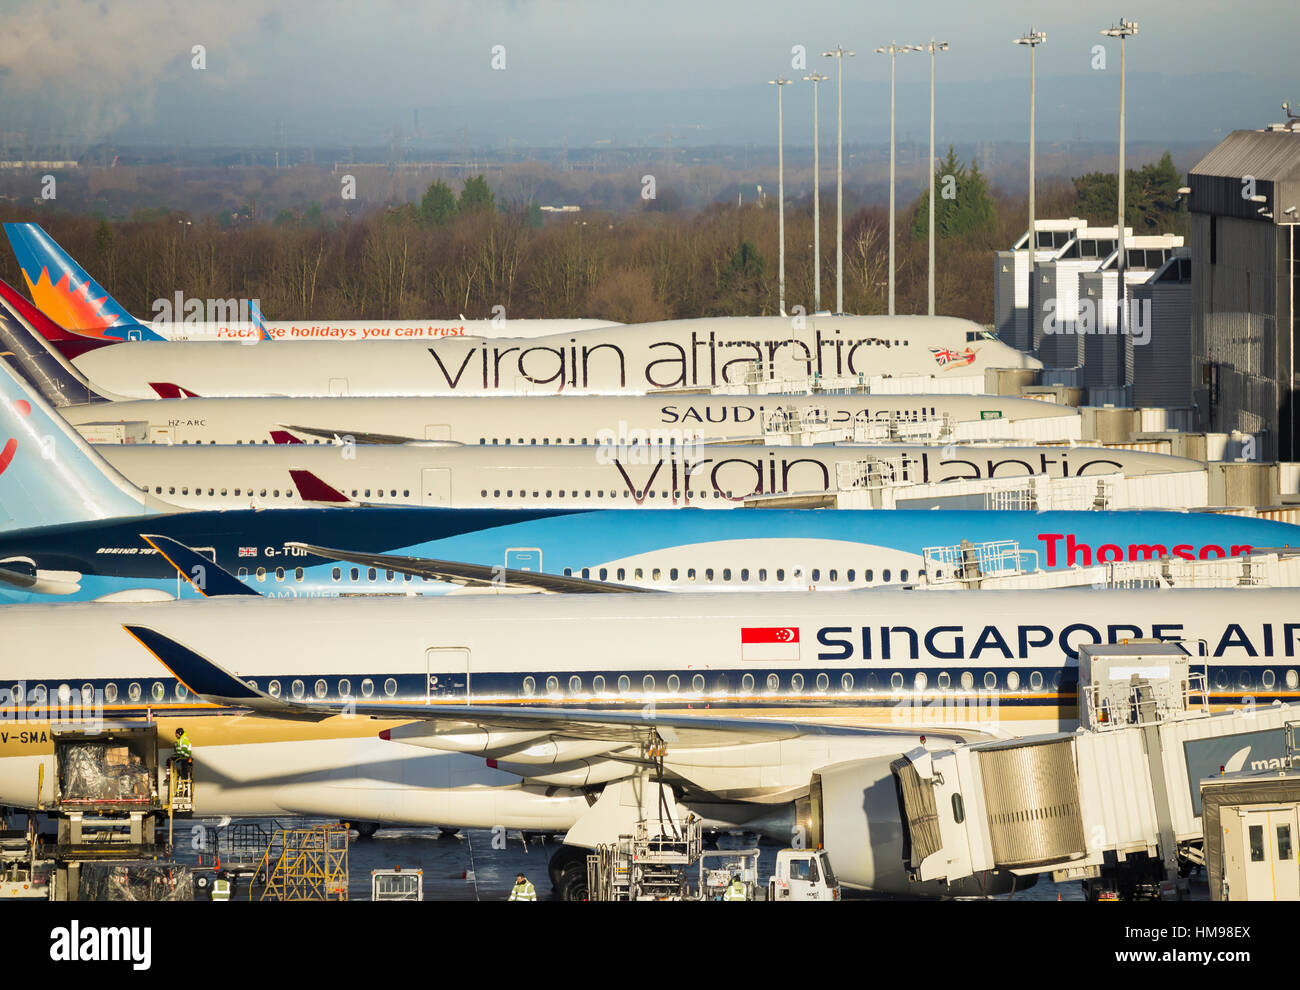 Vue sur plans (y compris Virgin Atlantic, Singapore airlines, Thomson..) à l'aéroport de Manchester la borne 2. UK Banque D'Images